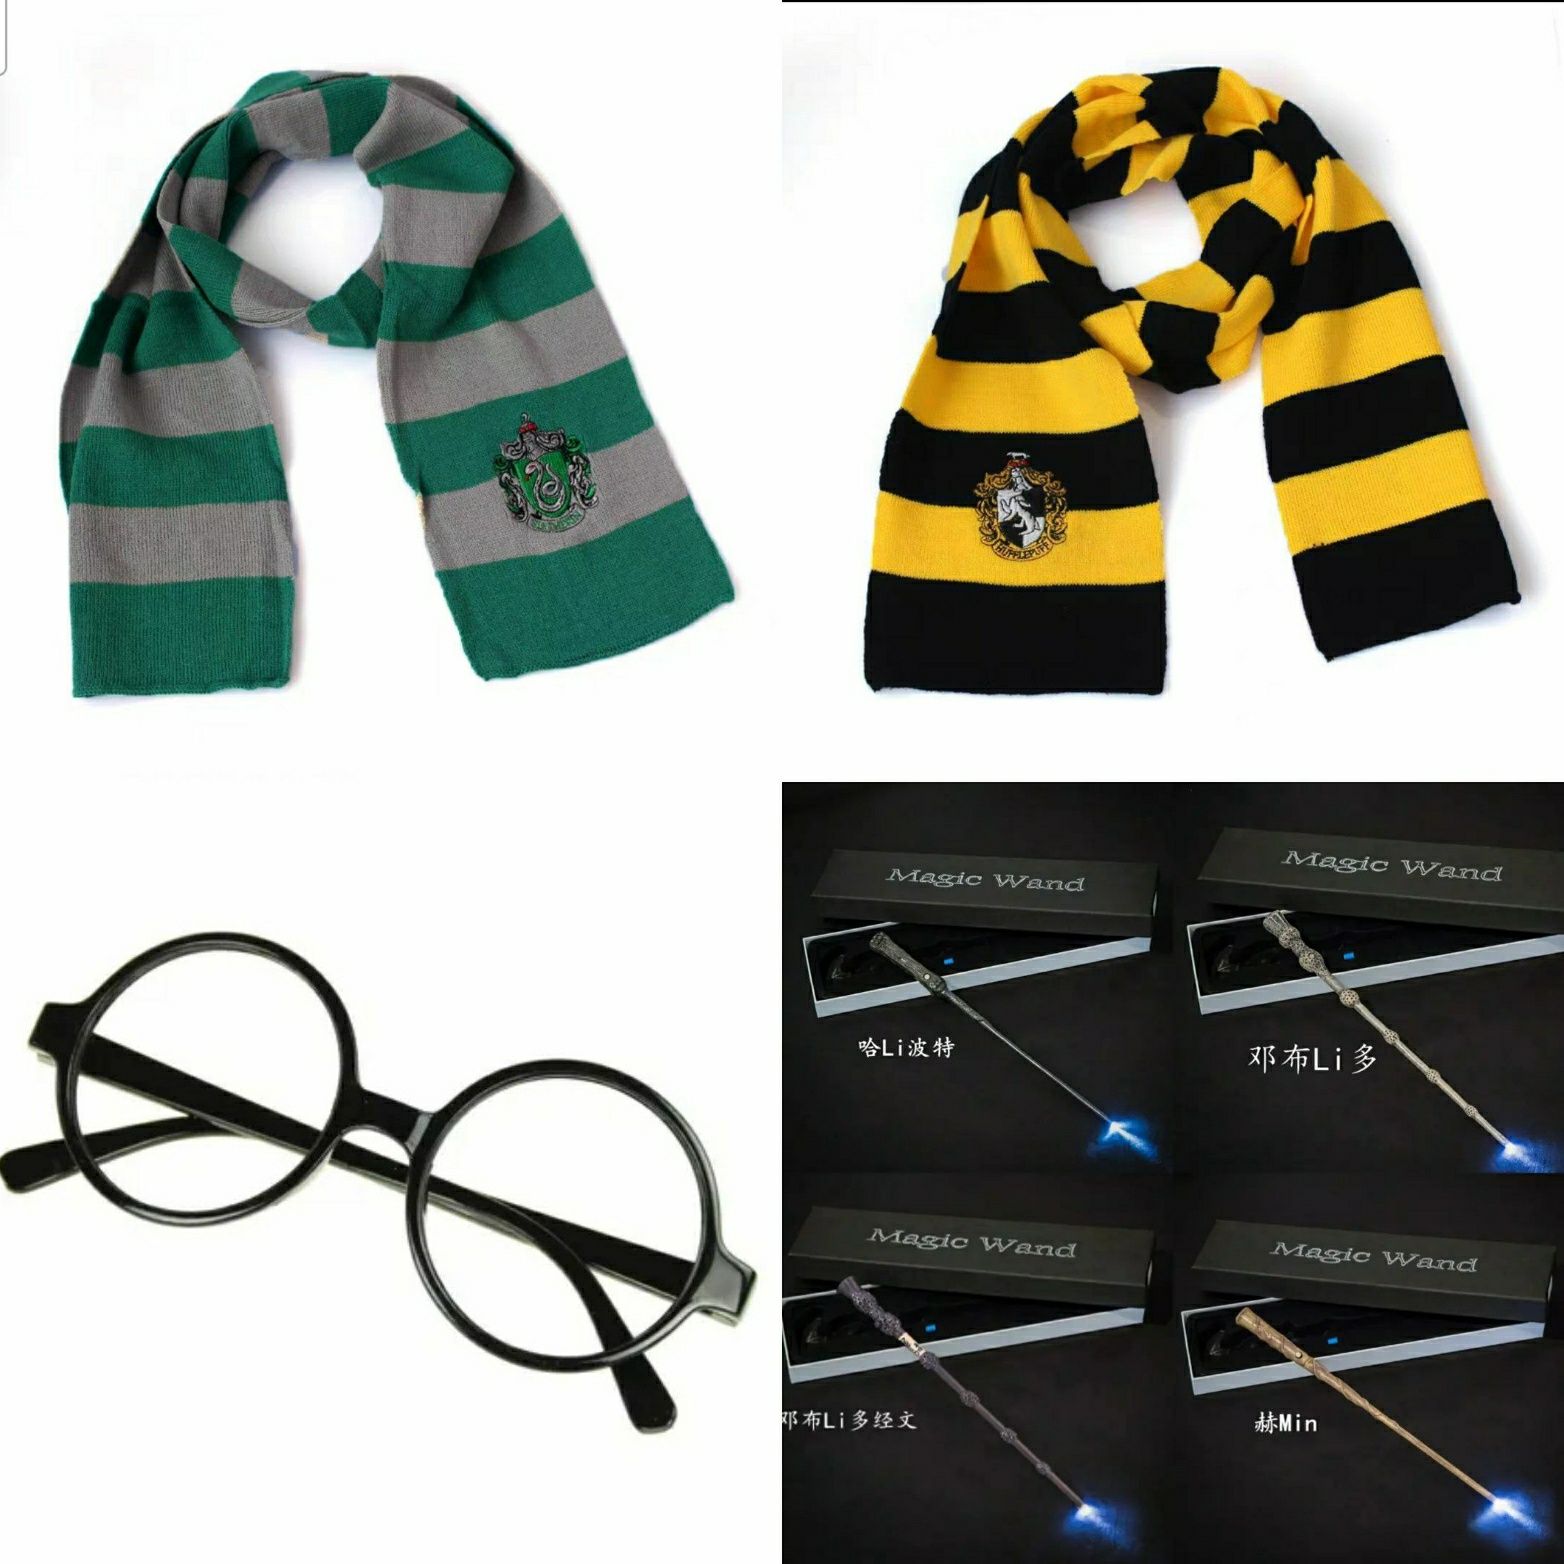 Очки,шарфы, манти, палочки фигурки Гарри Поттер